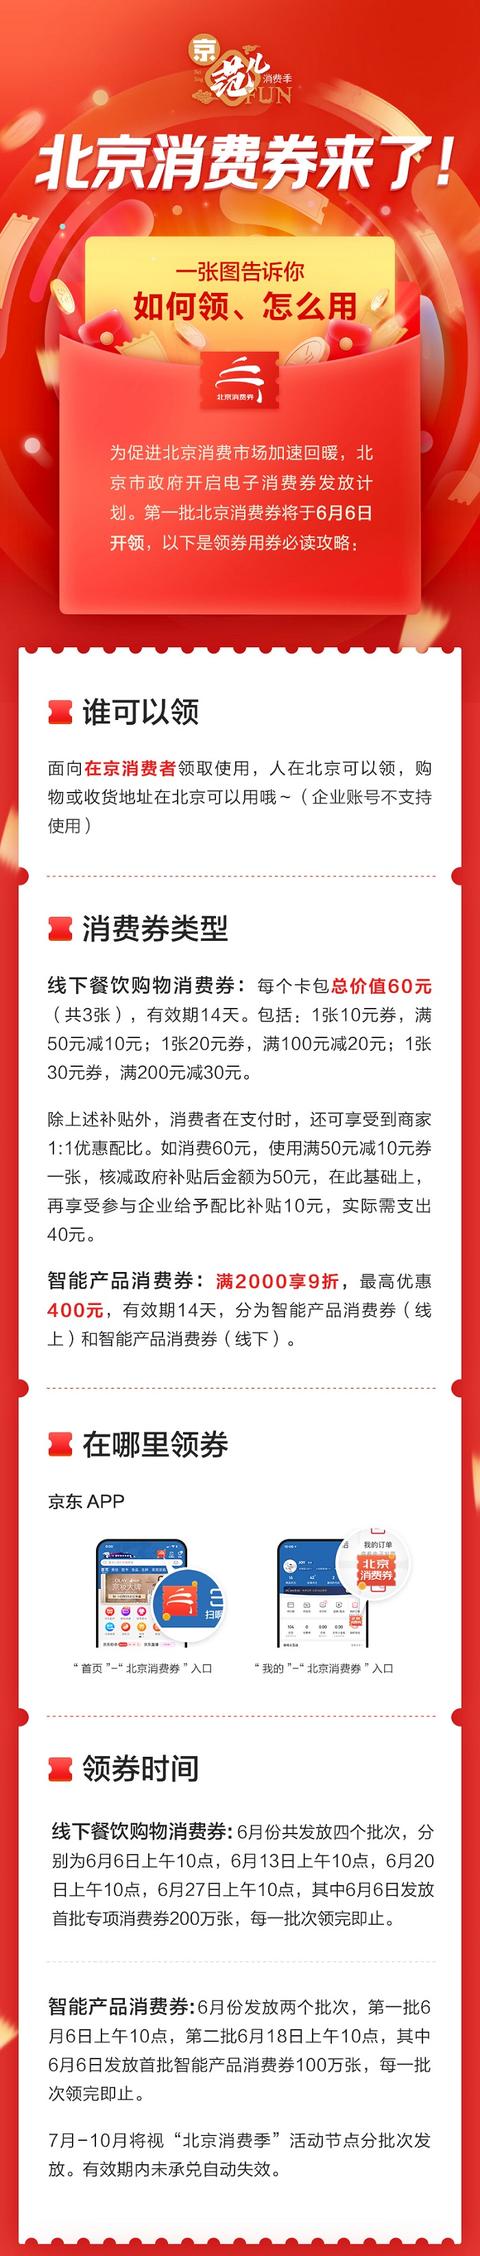 北京消费季6月6日起正式启动 122亿元消费券周六上午十点开领